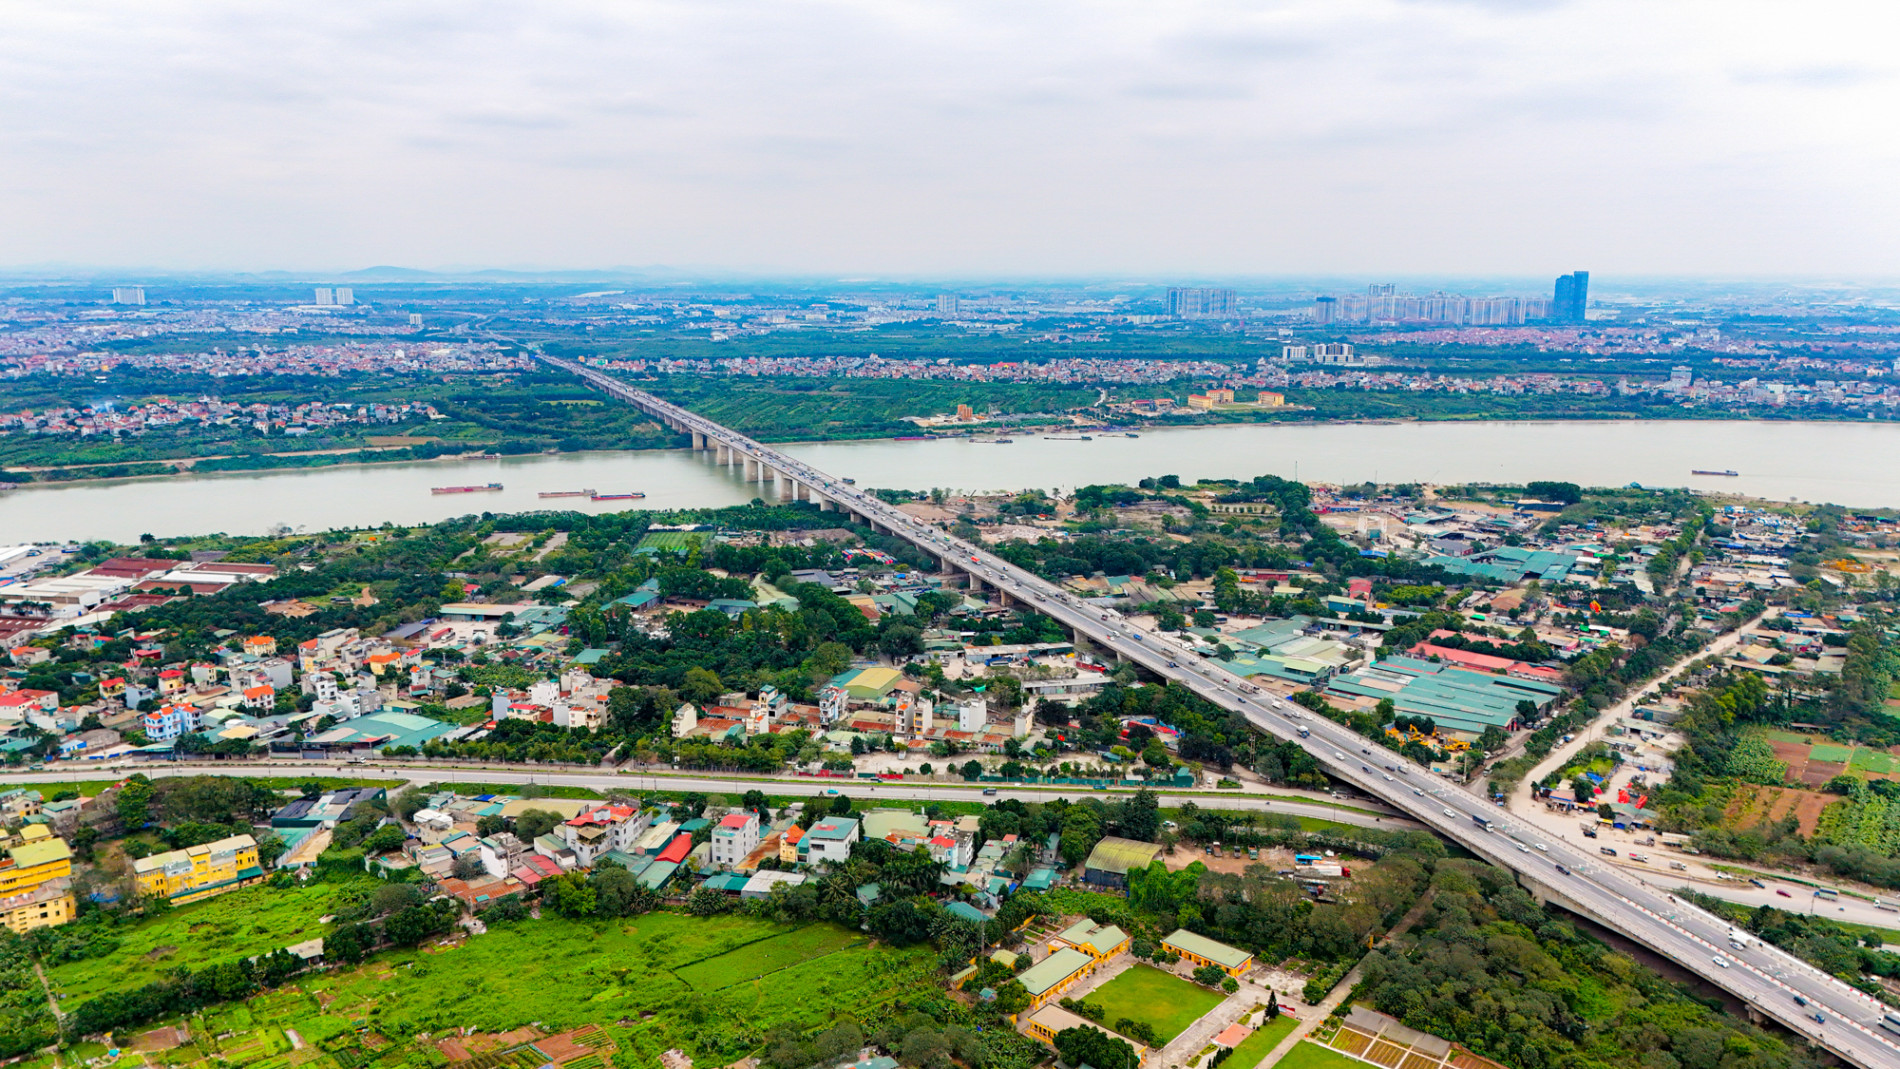 Toàn cảnh khu vực được quy hoạch xây cầu vượt sông Hồng, xung quanh là 3 siêu đô thị trị giá 13 tỷ USD lớn bậc nhất phía Bắc- Ảnh 12.